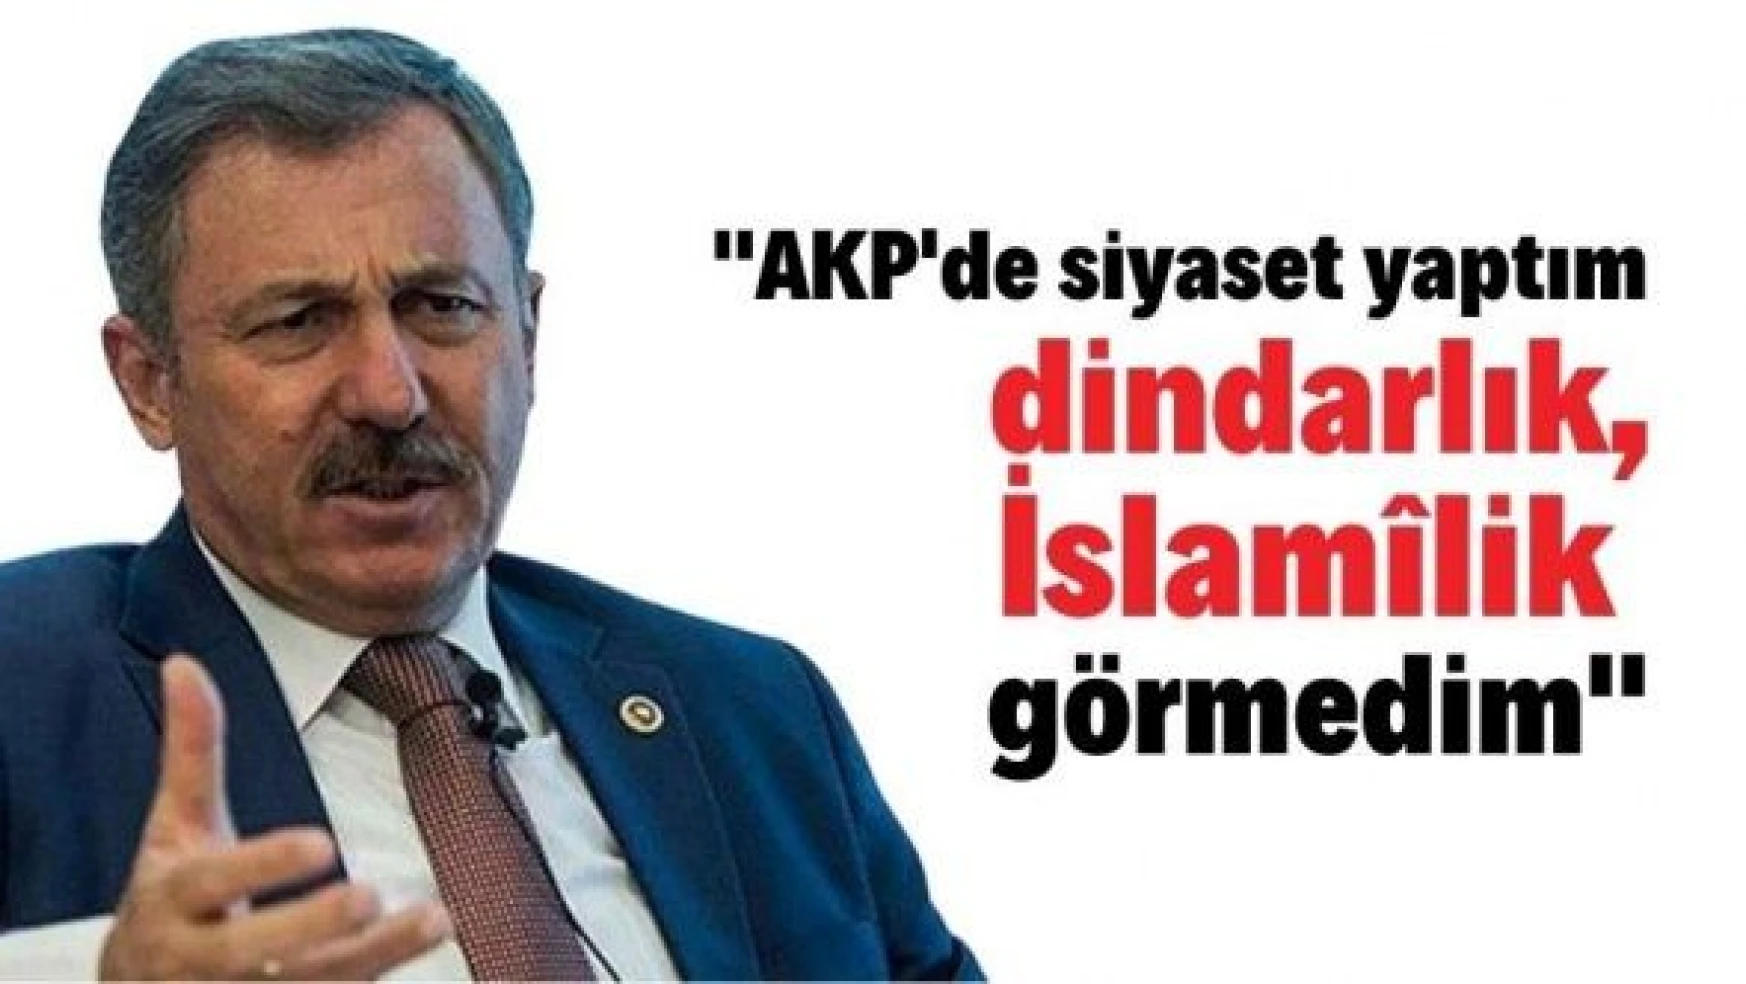 Selçuk Özdağ: 'AKP'de siyaset yaptım İslamiliği, dindarlığı asla görmedim'